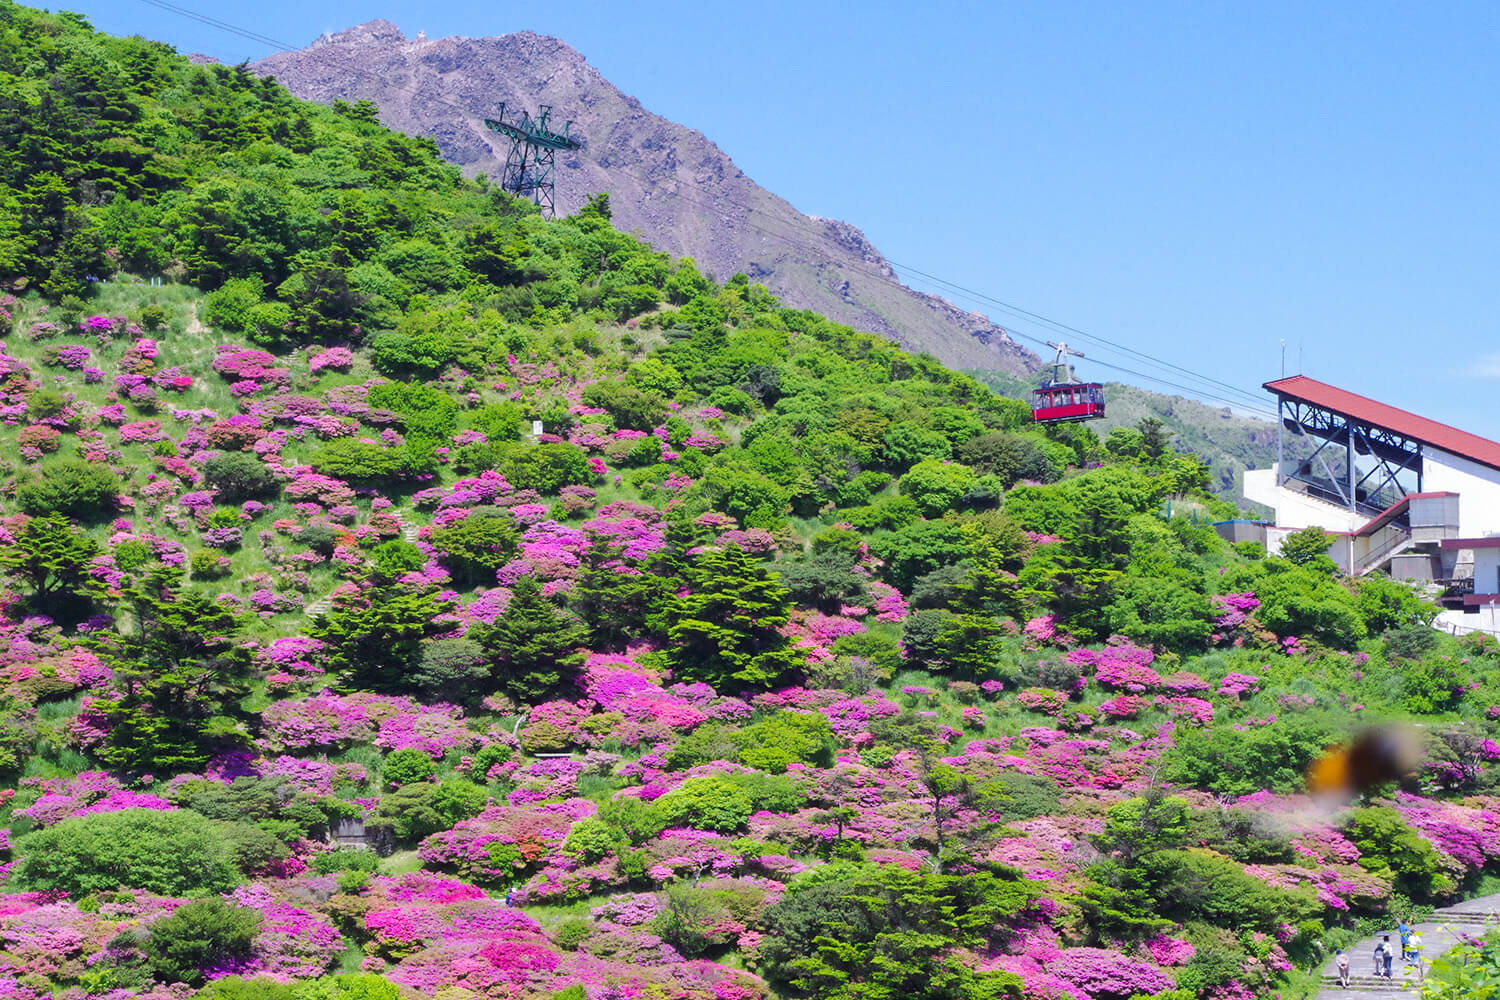 ミヤマキリシマの見頃は、5月中旬あたり。ロープウェイで標高1,333mの妙見岳に登ることができる